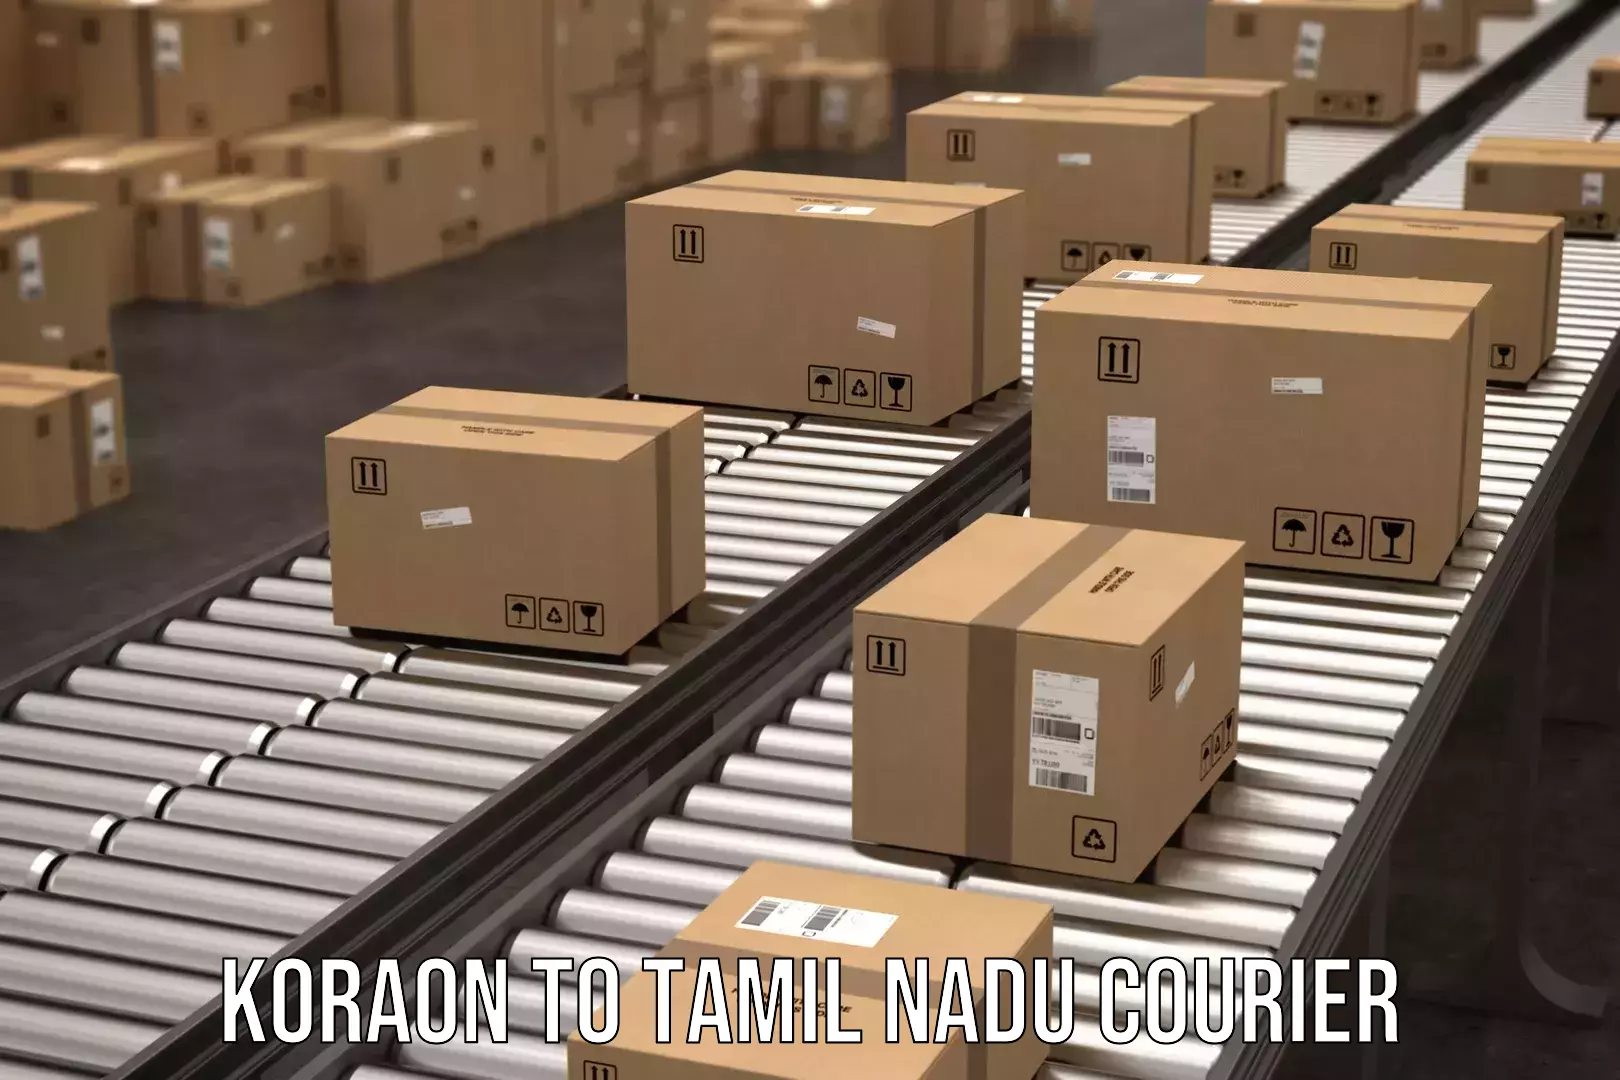 Next-day freight services Koraon to Tamil Nadu